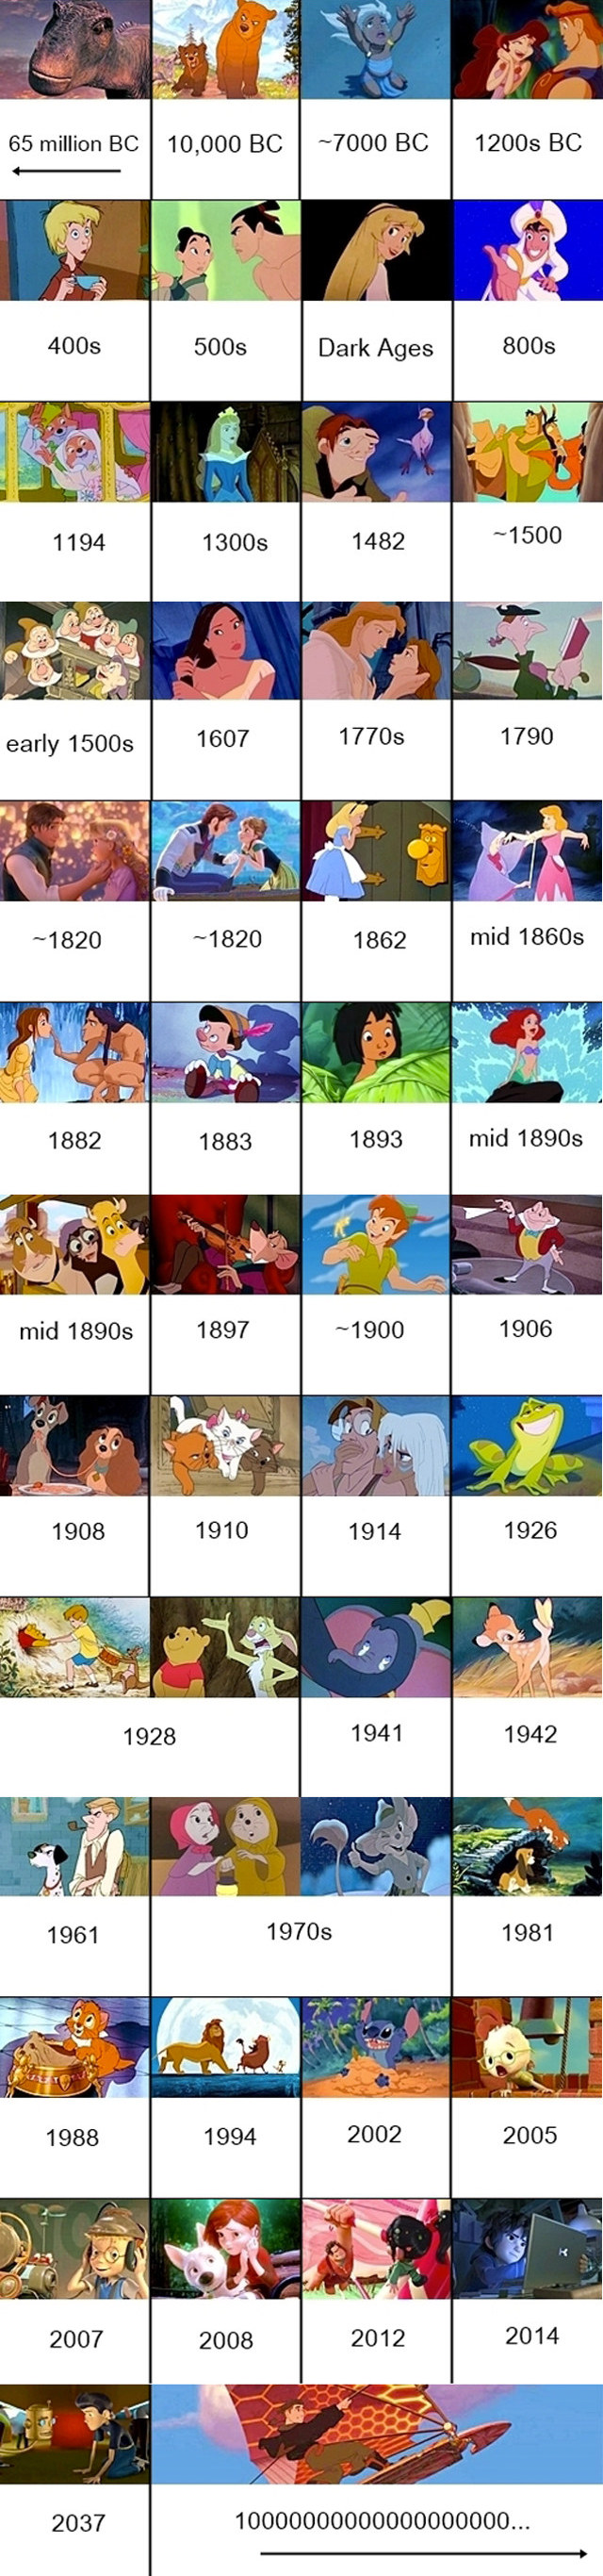 Les films Disney dans l’ordre chronologique